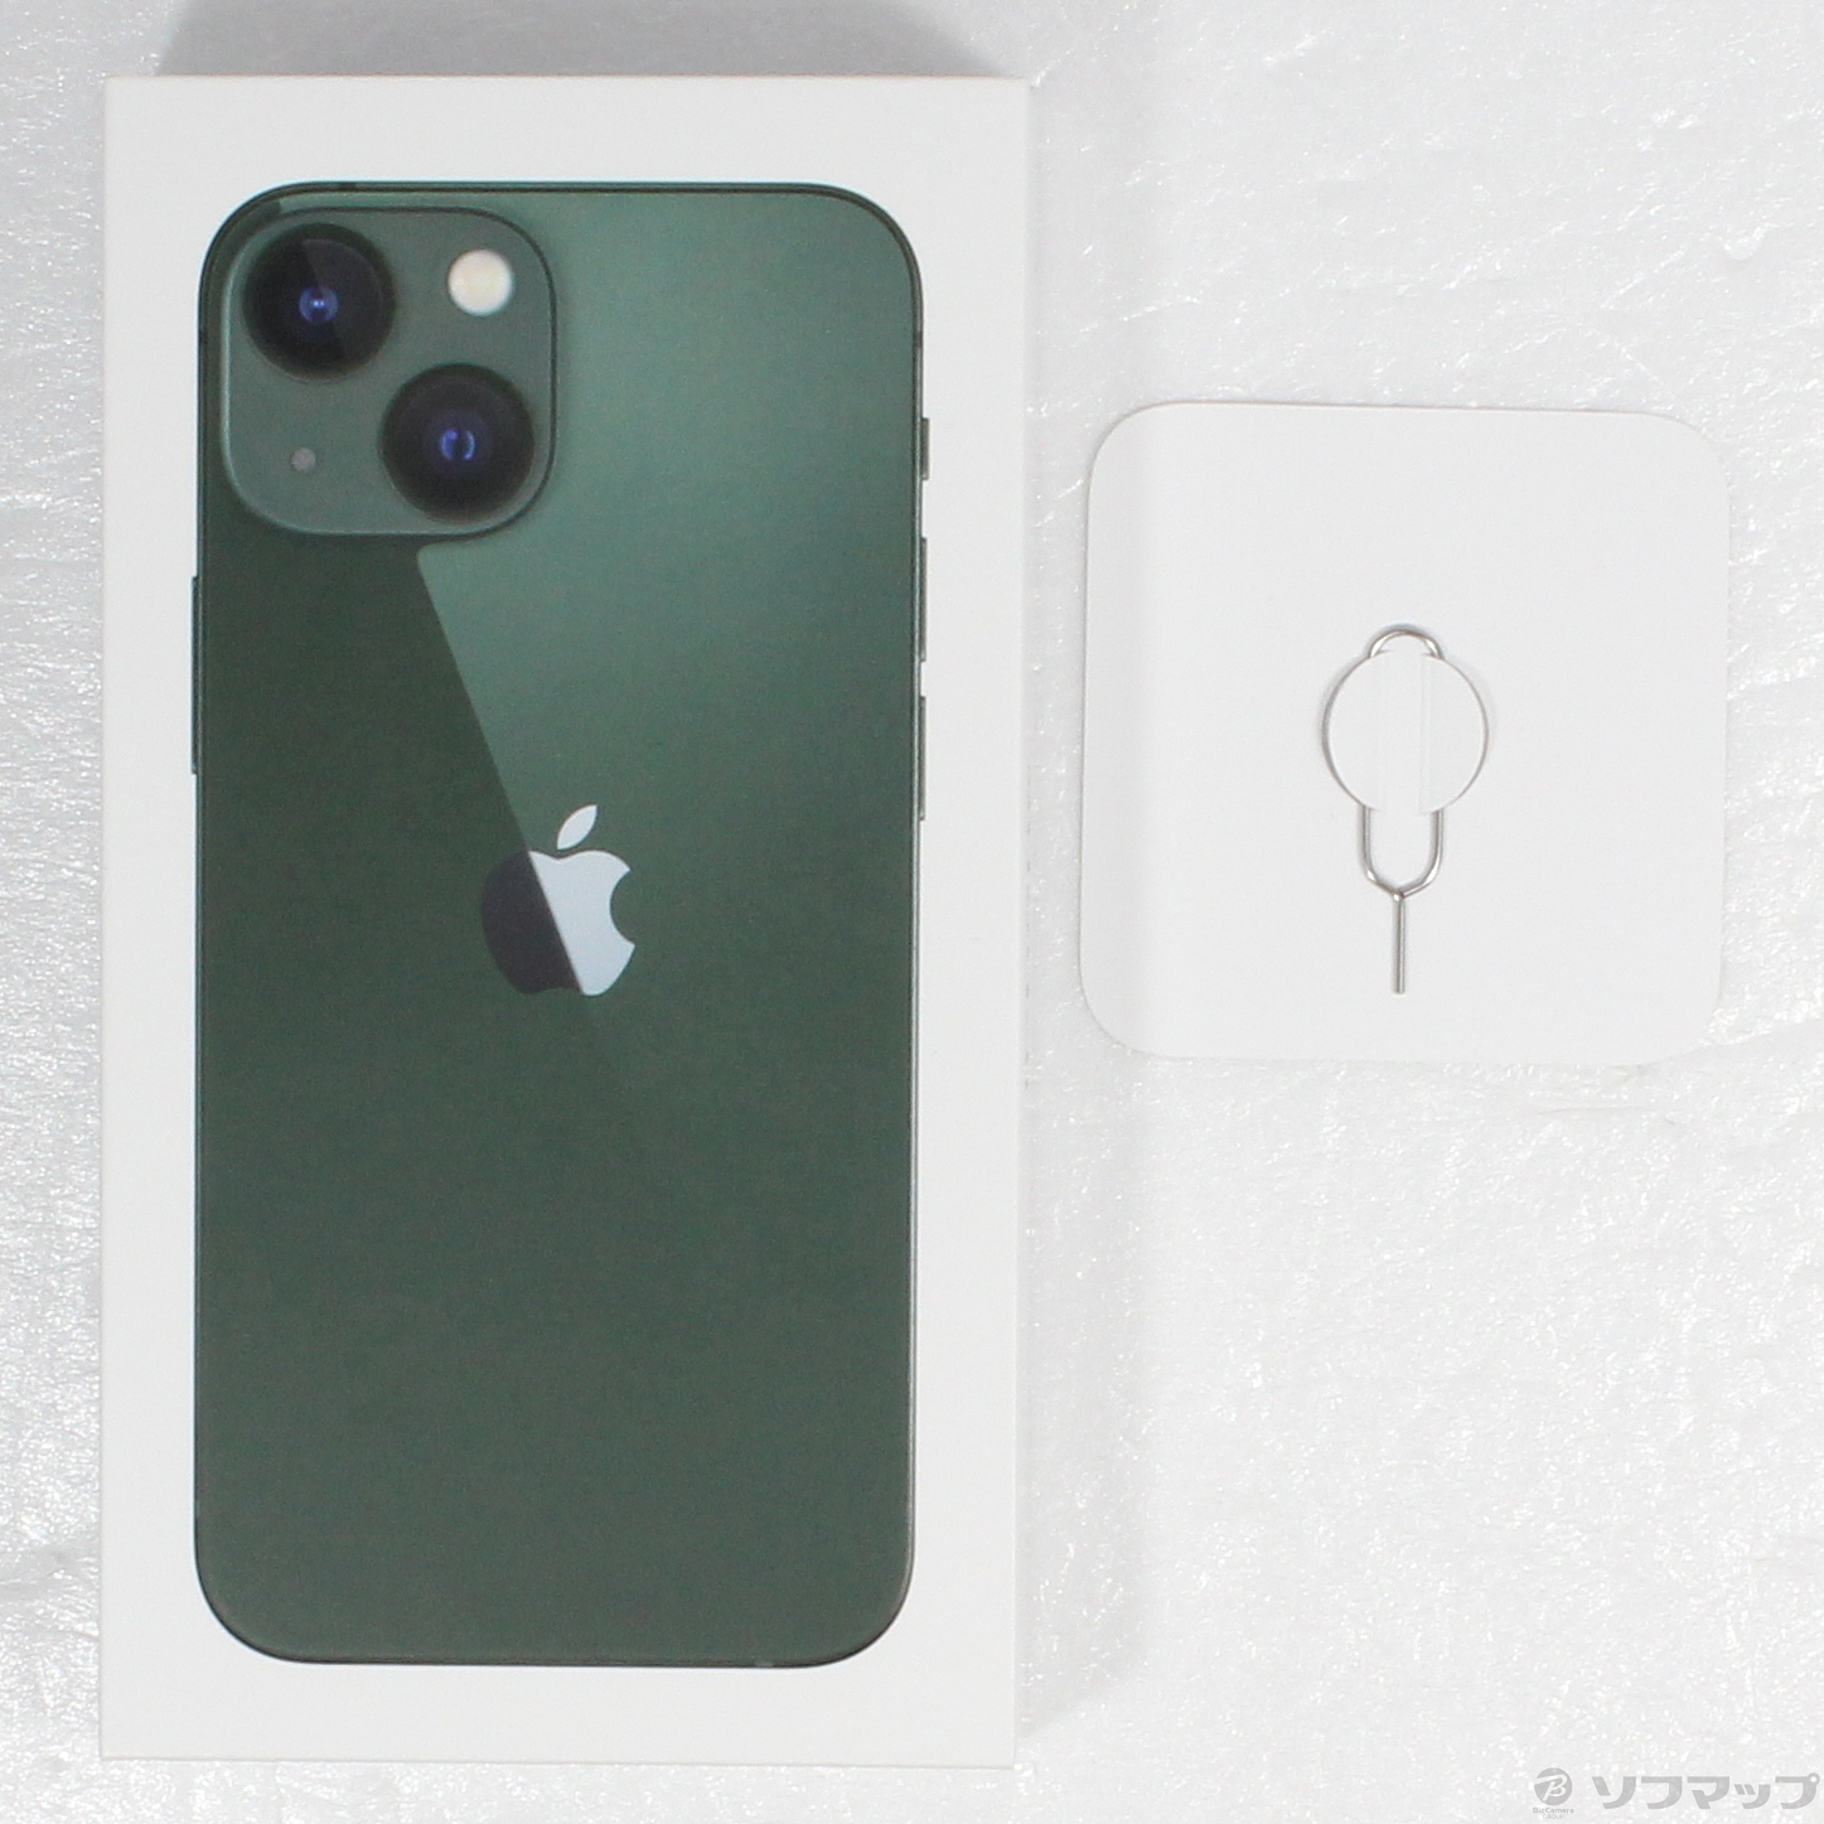 初回限定 MNFD3J/A グリーン iPhone GB SIMフリー- 13 mini Mini 新品純正品 mini 256GB アップル グリーン  SIMフリー 13 スマホ本体